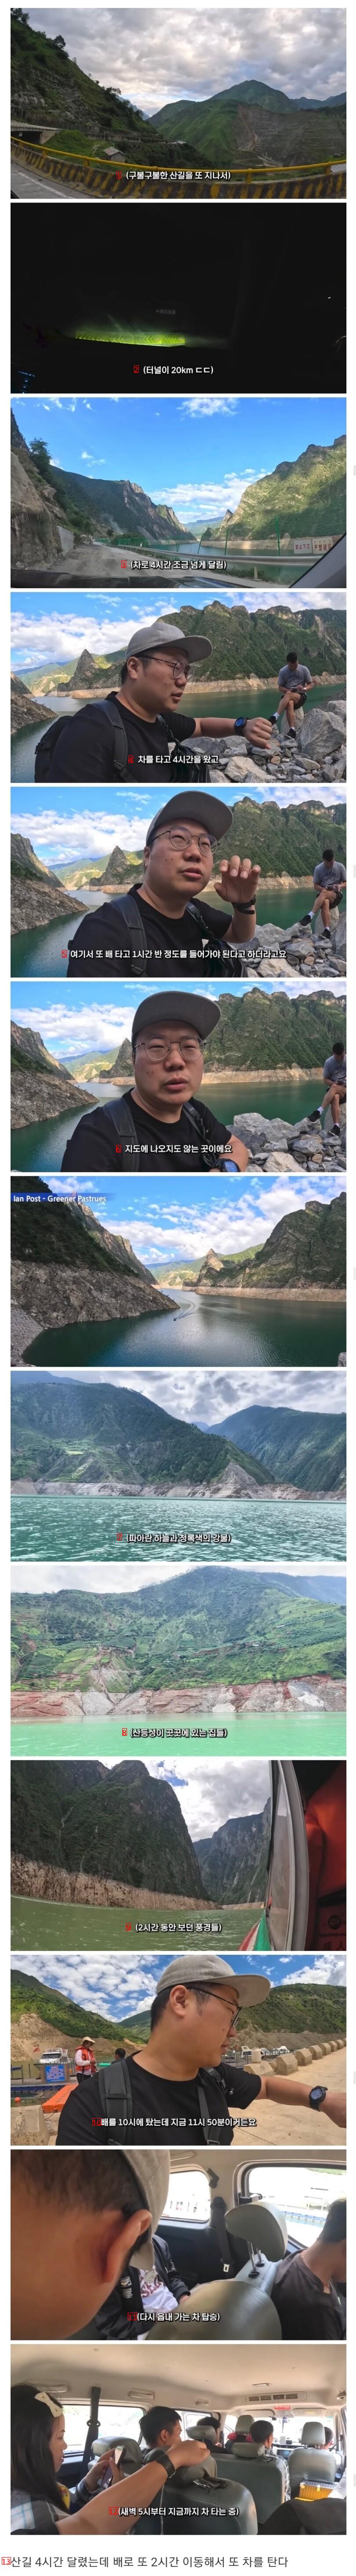 中国の奥深い田舎町を訪れた旅行YouTuber